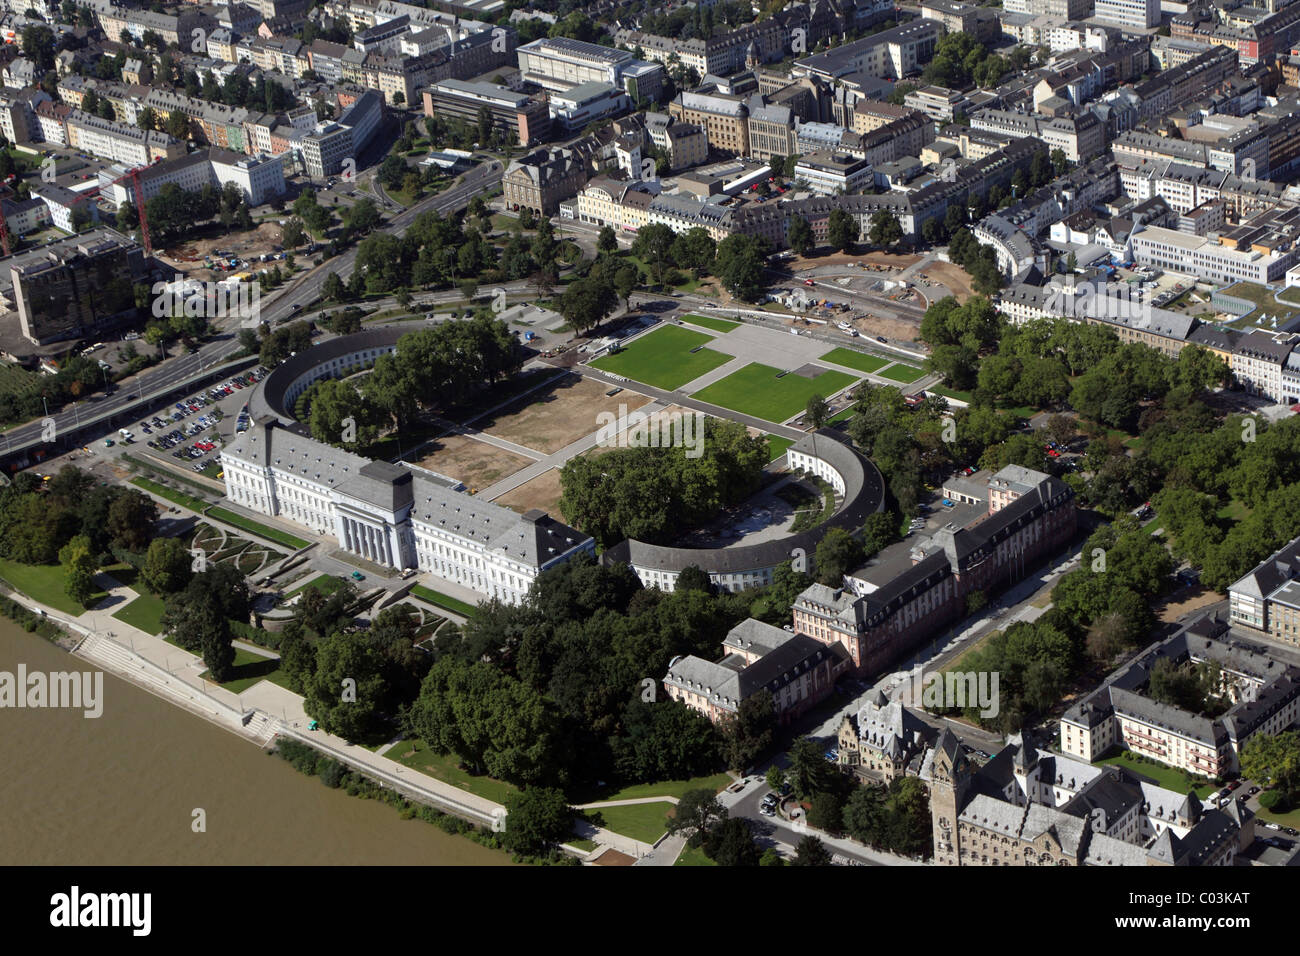 Vue aérienne du site, de la Jardin Spectacle au palais électoral, Koblenz, Rhénanie-Palatinat, Allemagne, Europe Banque D'Images